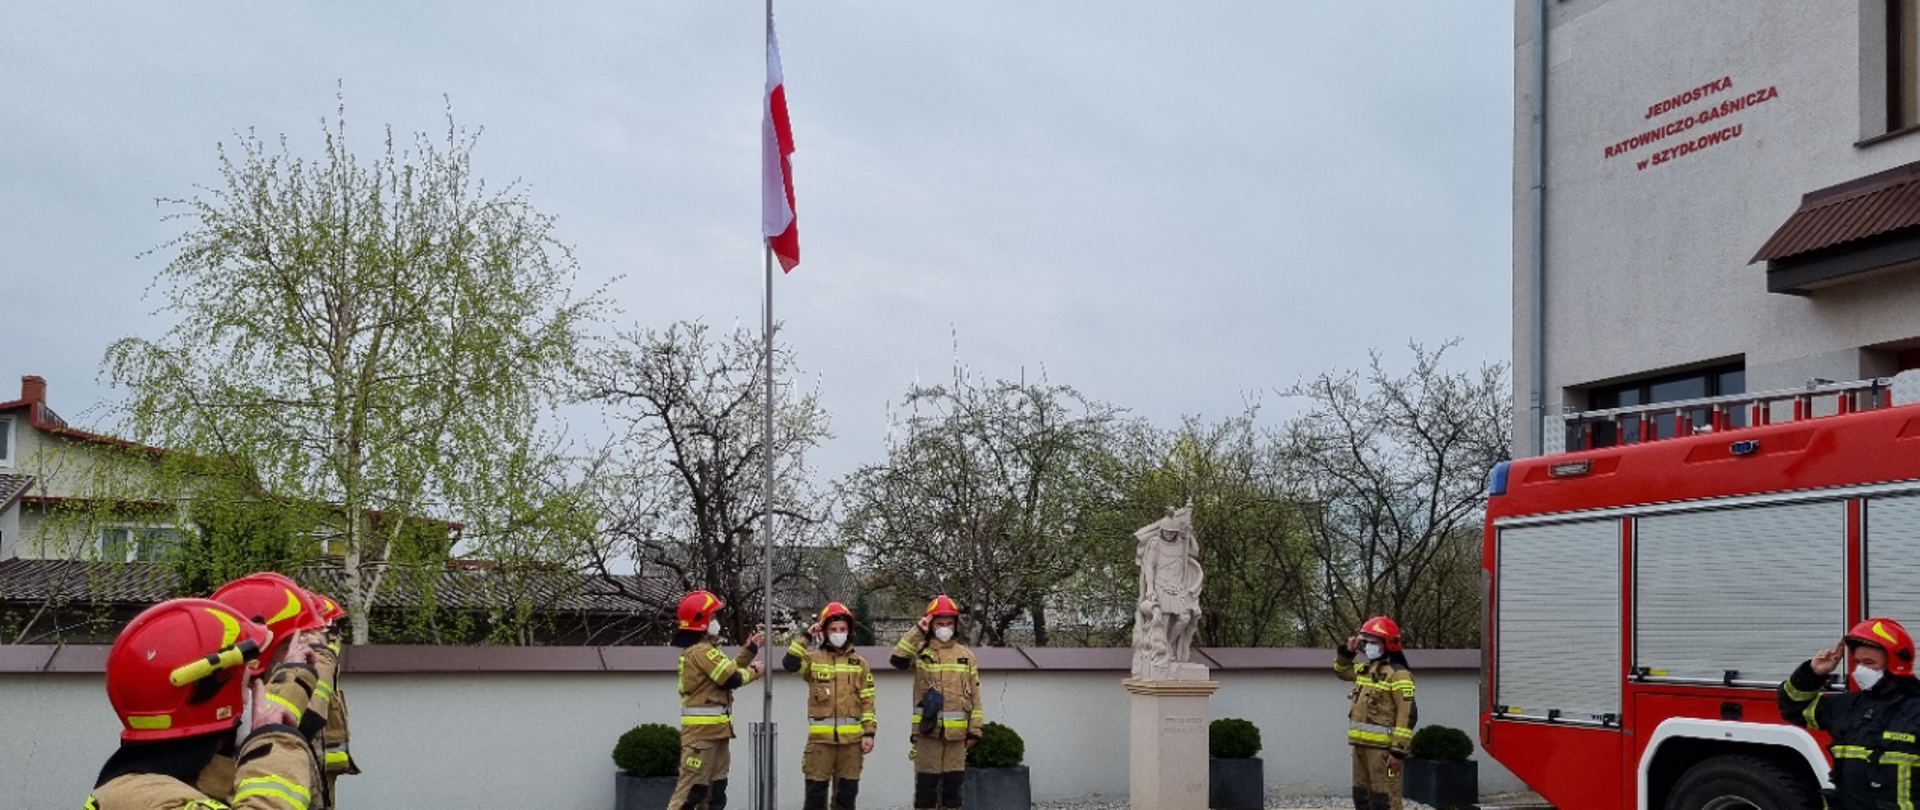 Uroczyste podniesienie flagi w Komendzie Powiatowej PSP w Szydłowcu - strażacy wciągający flagę państwową na maszt oddający honor fladze przez salutowanie.